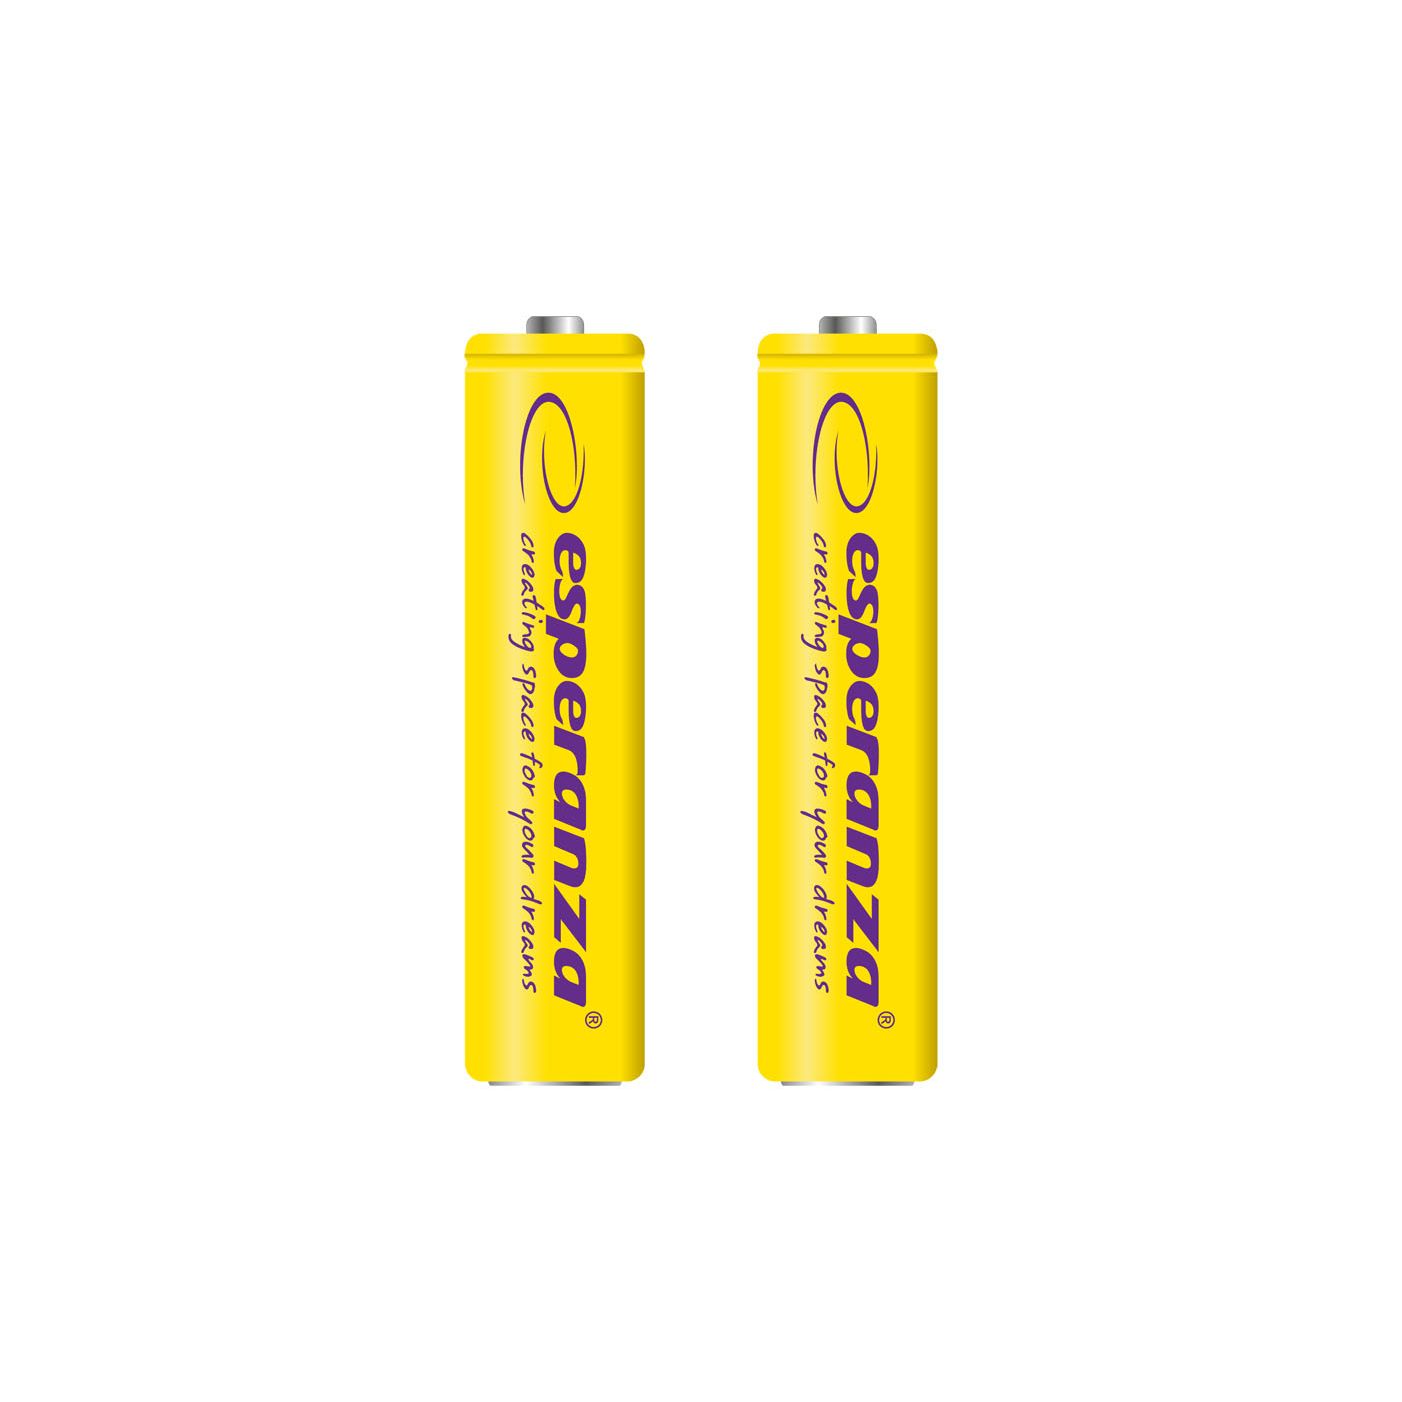 Uppladdningsbara batterier Esperanza  Ni-MH AAA 1000mAh 2 st, gul